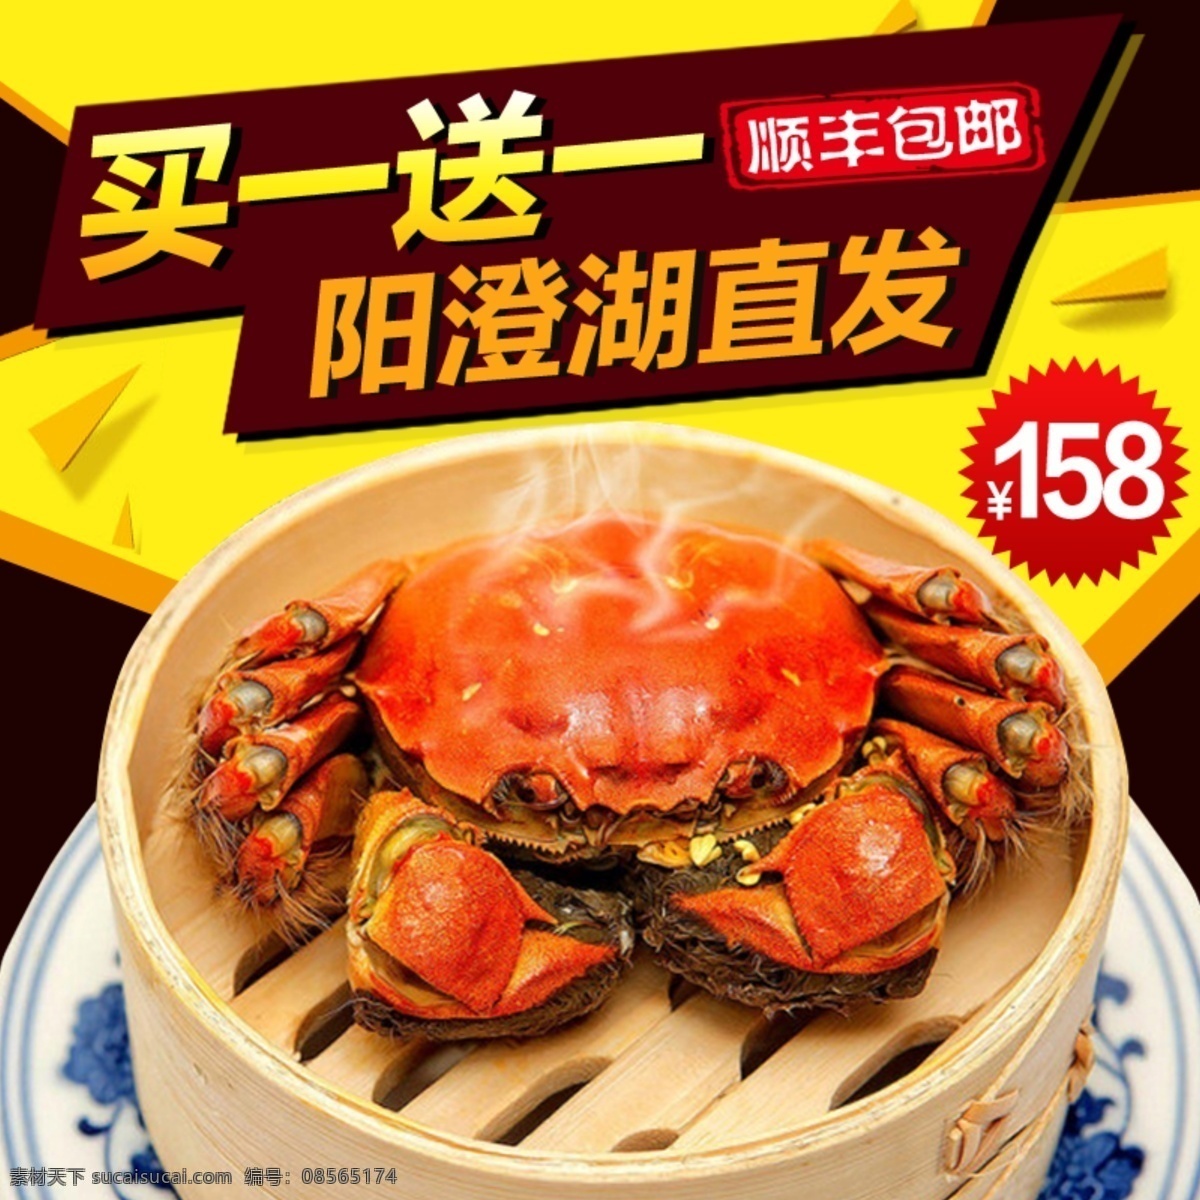 阳澄湖 大闸蟹 主 图 螃蟹图片 螃蟹促销 广告 海报